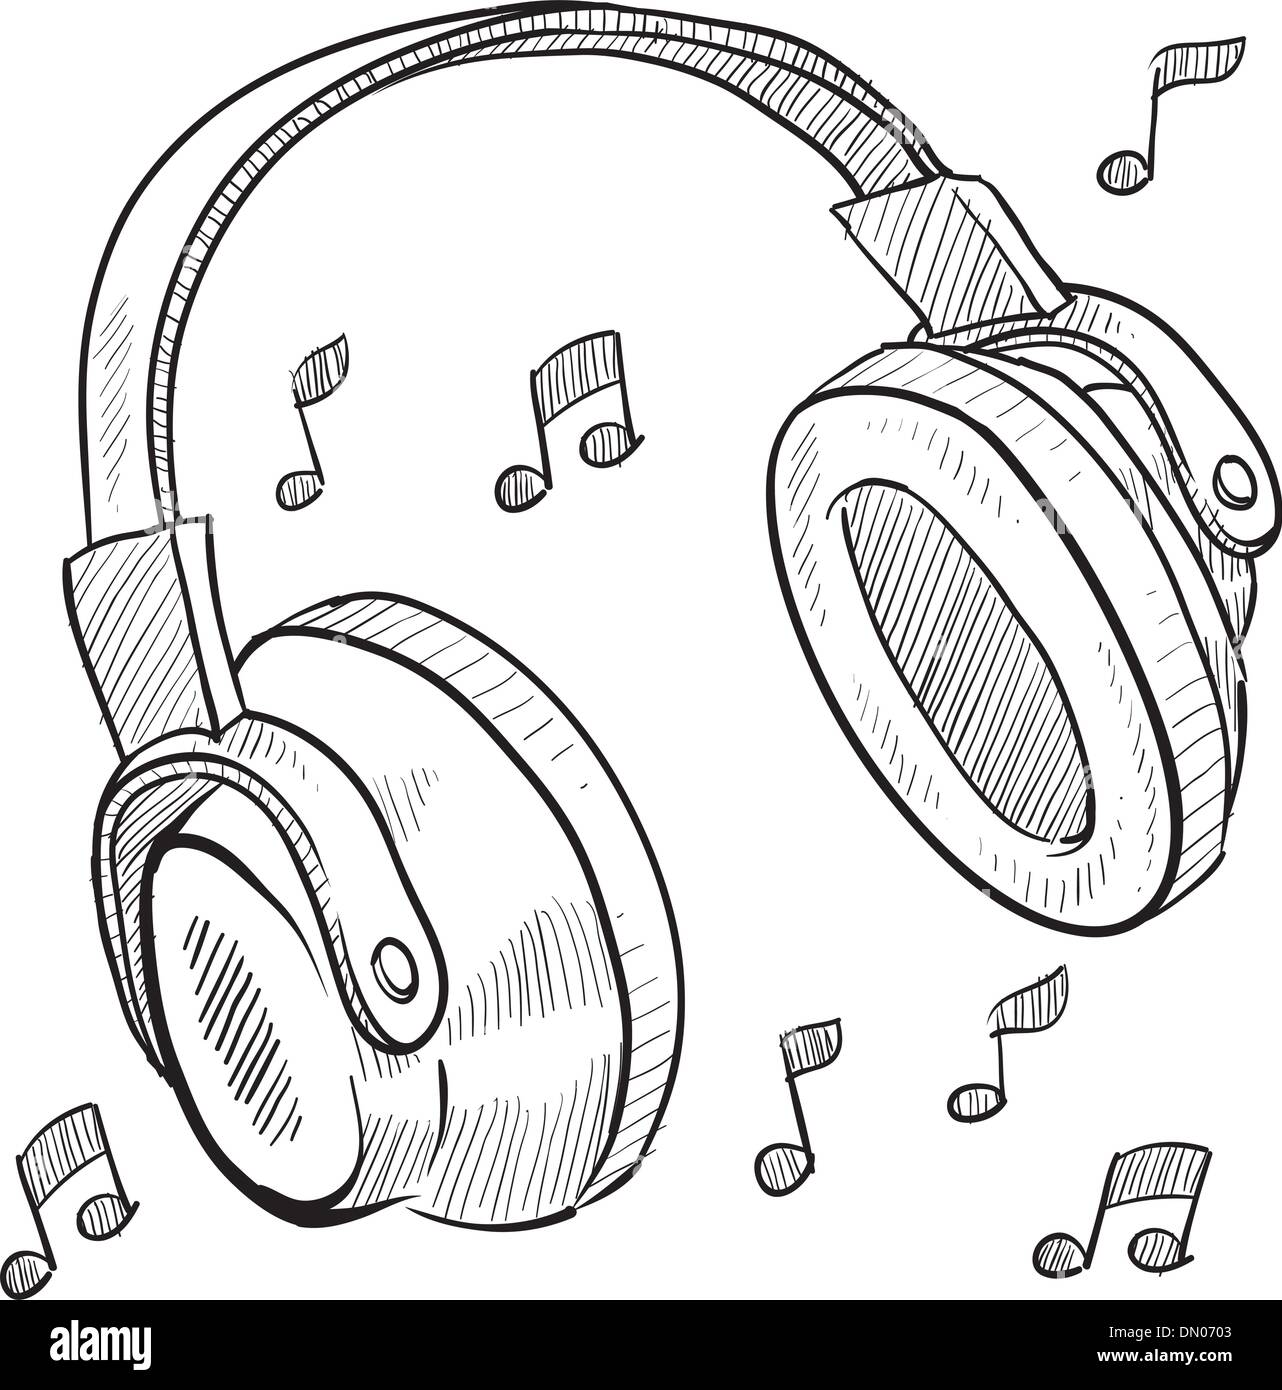 Audio headphones sketch Stock Vector Image & Art - Alamy